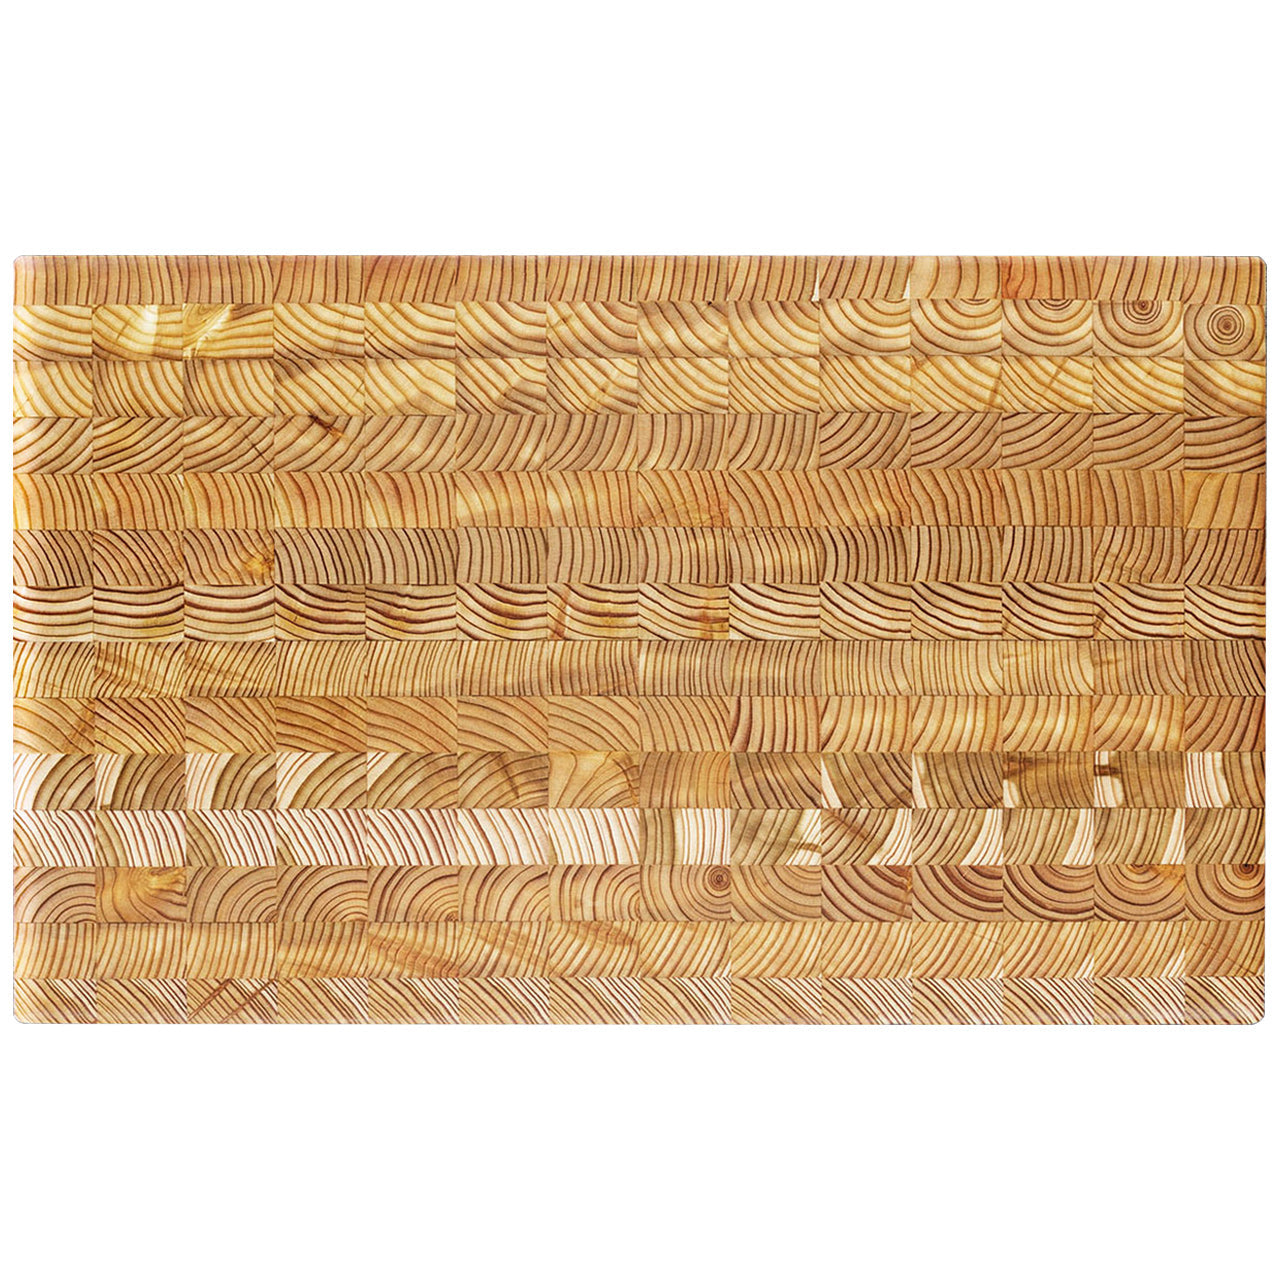 Larchwood Cutting Board (Standard)